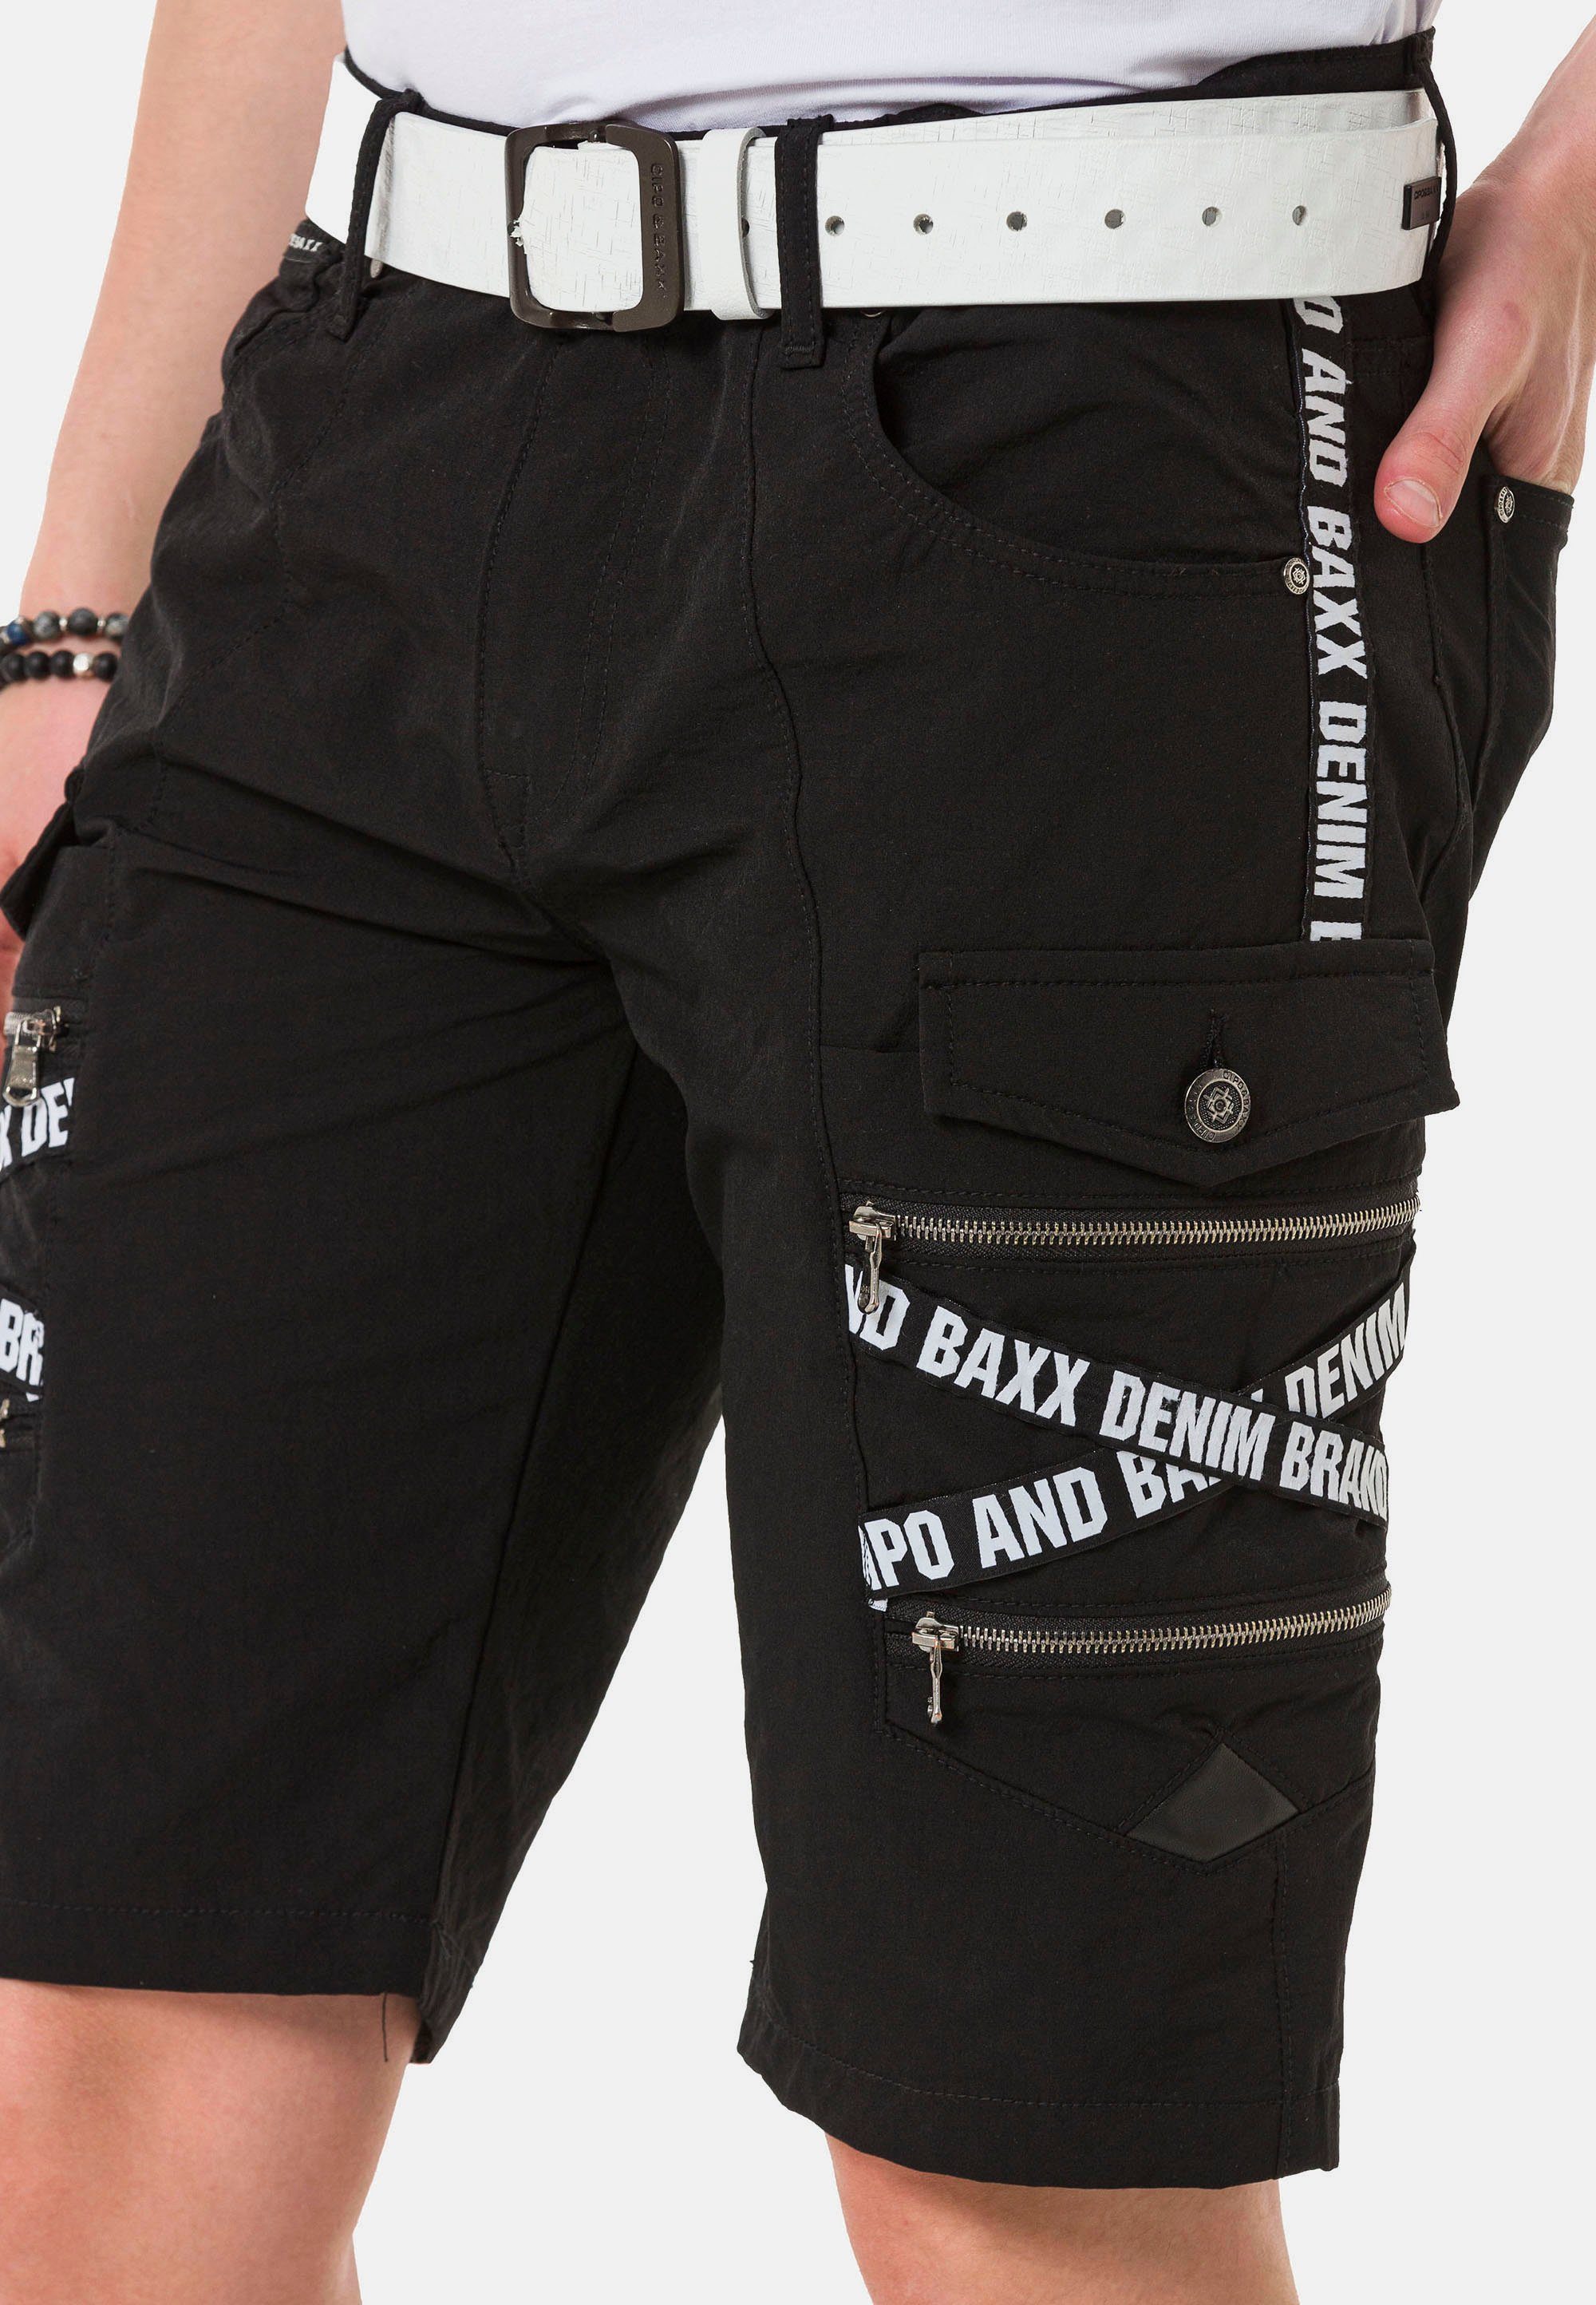 Cipo & Baxx Cargotaschen trendigen schwarz Shorts mit